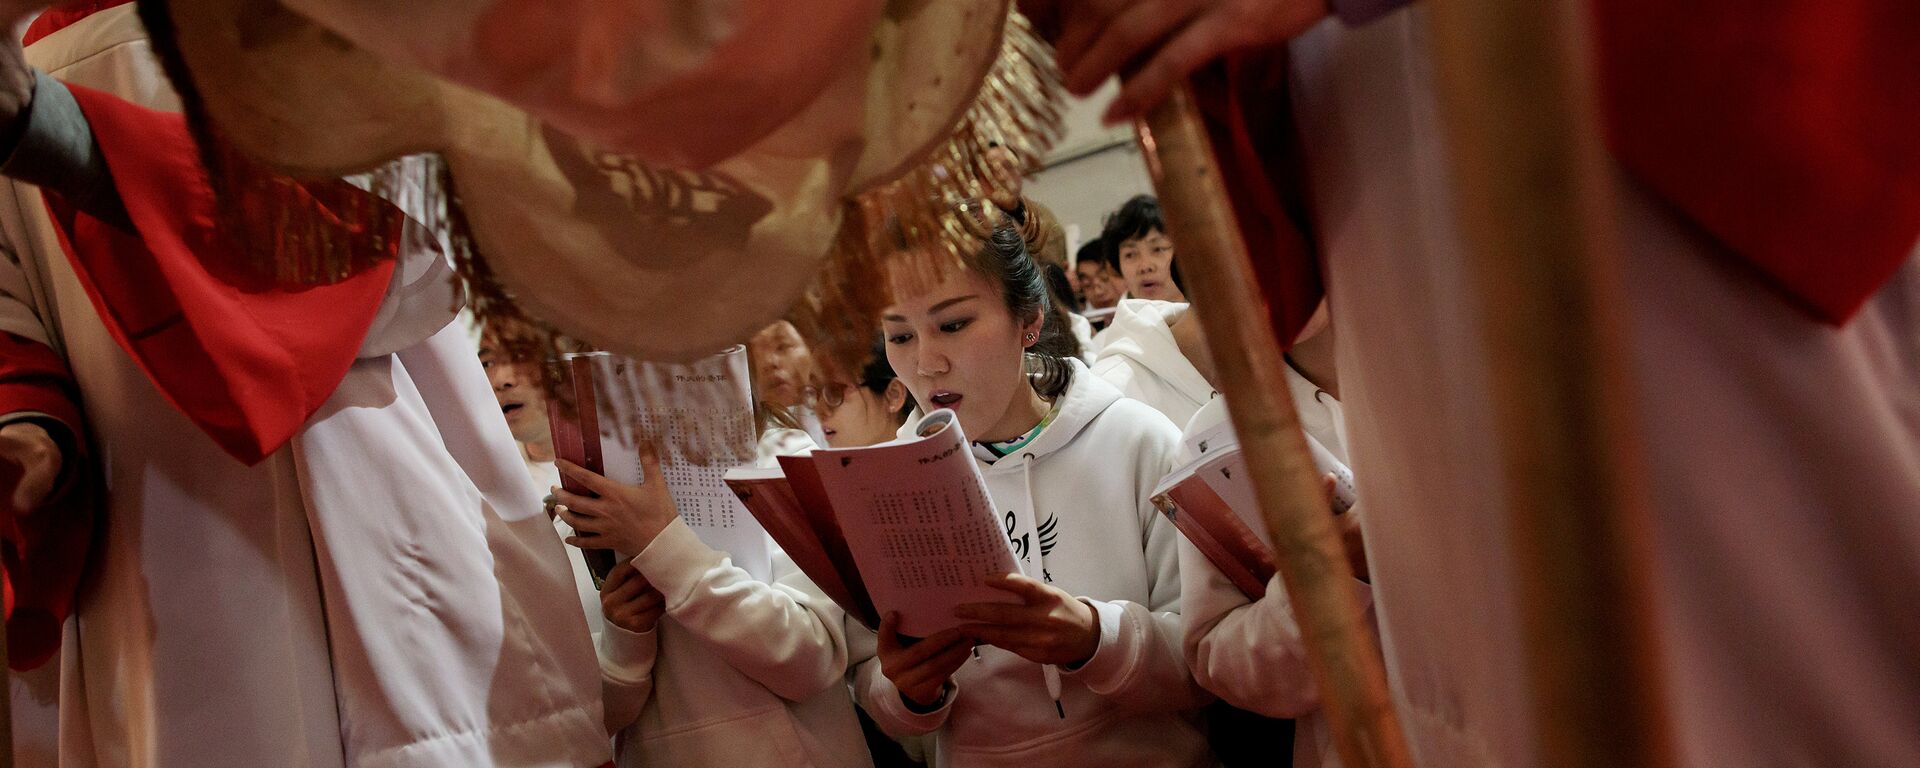 Các tín đồ Công giáo hát trong Thánh lễ Ngày thứ Năm vĩ đại tại Nhà thờ Đức Mẹ Vô nhiễm ở Bắc Kinh - Sputnik Việt Nam, 1920, 22.12.2021